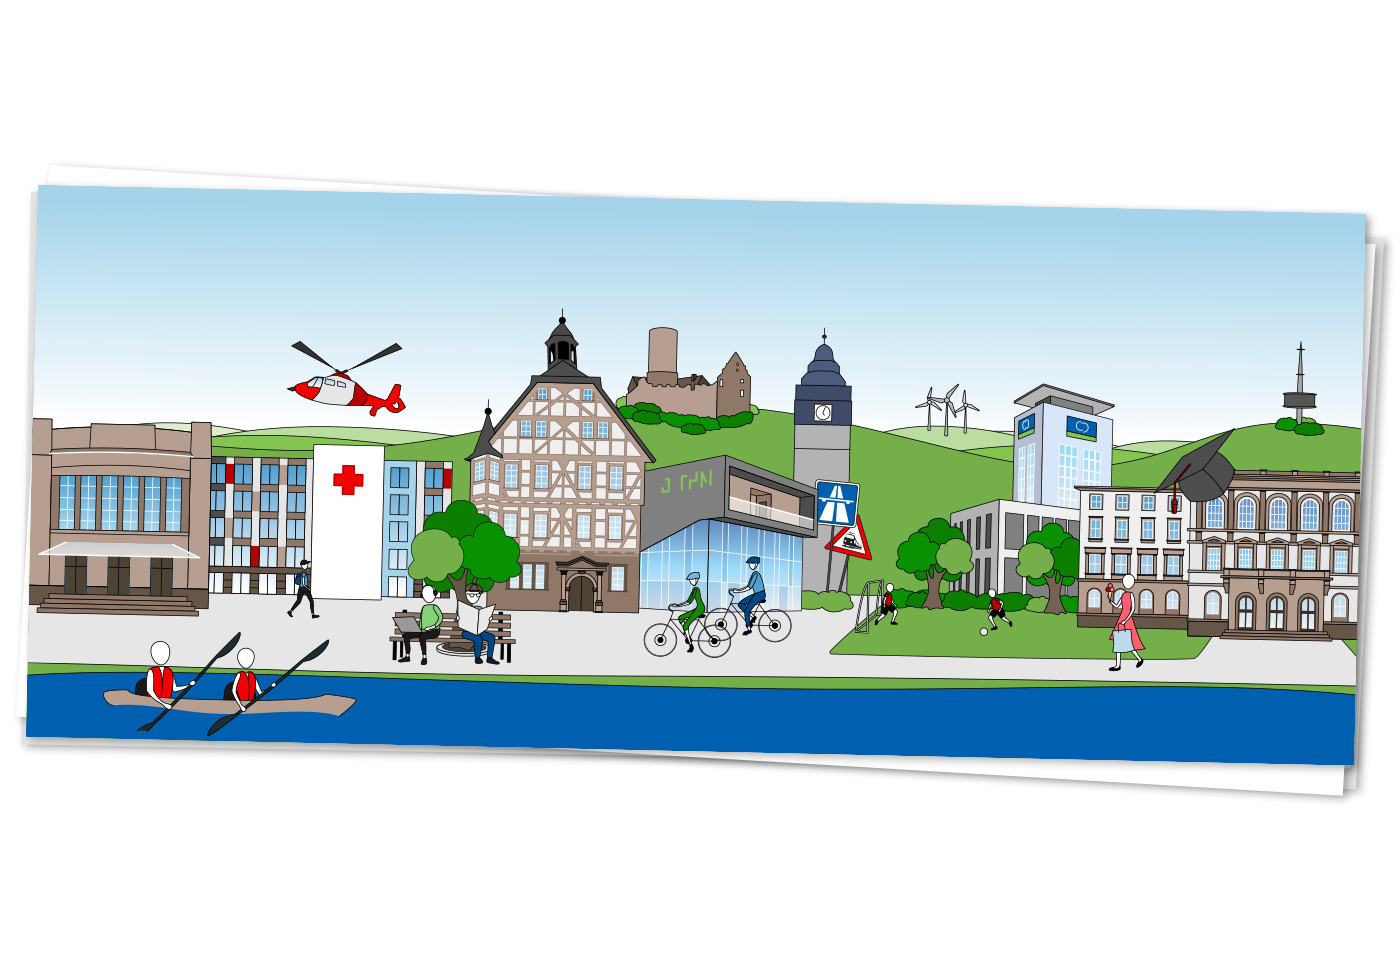 Mockup der fertigen Illustration - Headerbild der neuen Website für den Landkreis Giessen